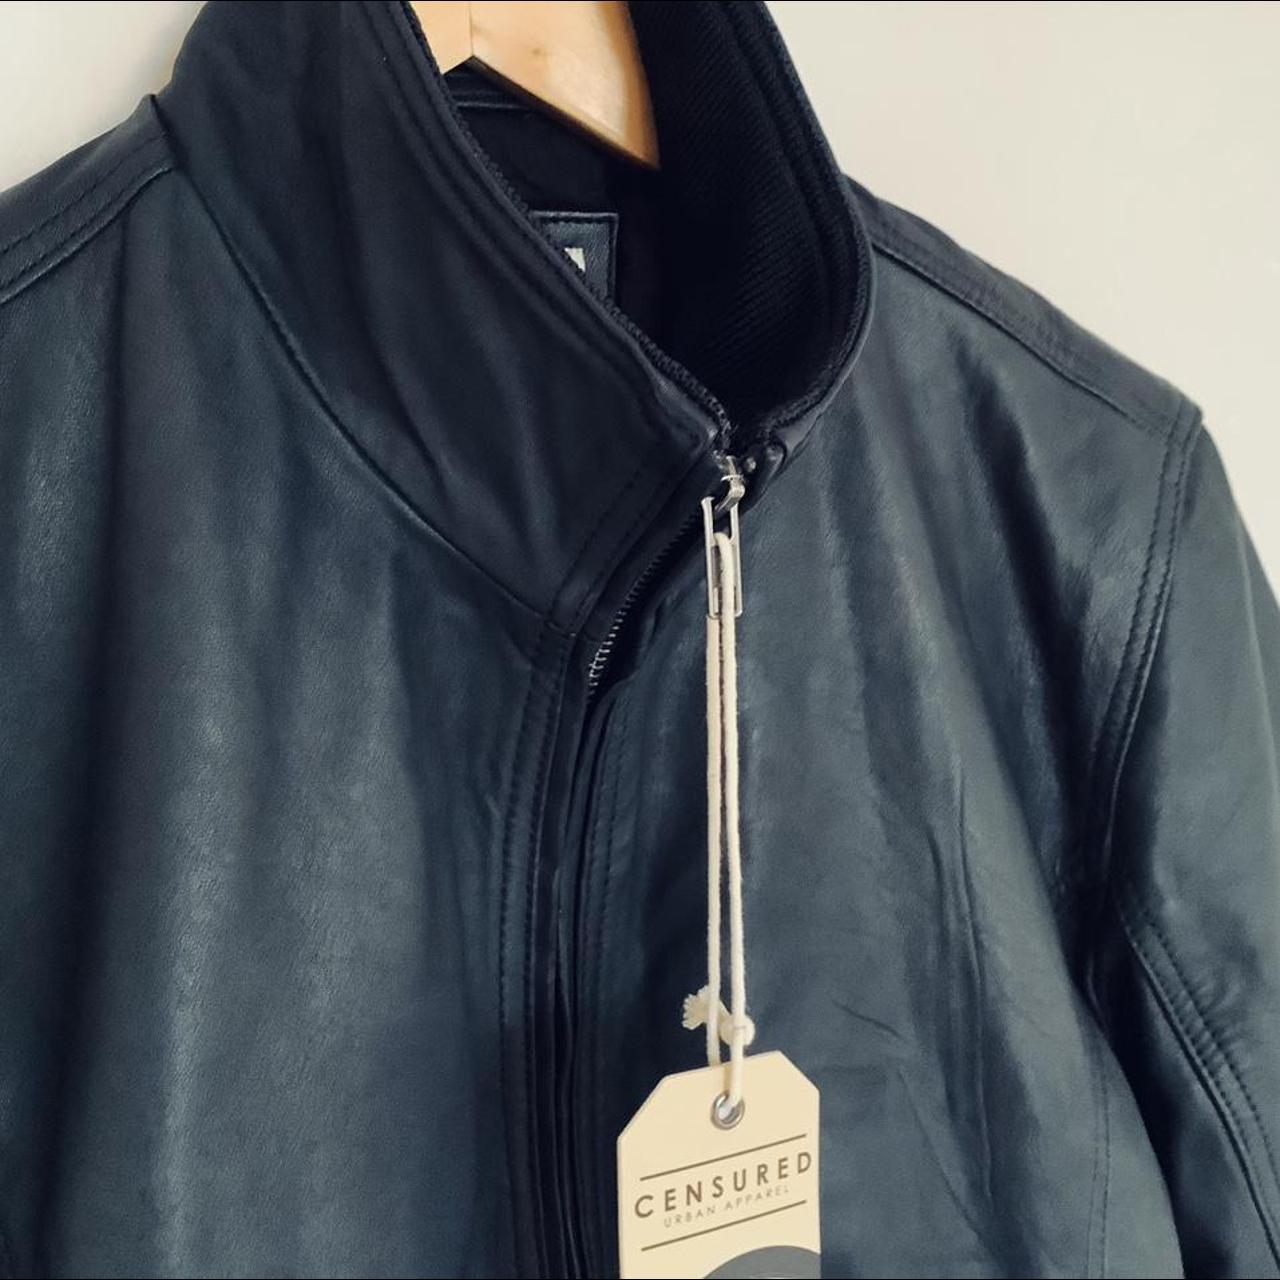 Censured real leather mens bomber jacket -... - Depop